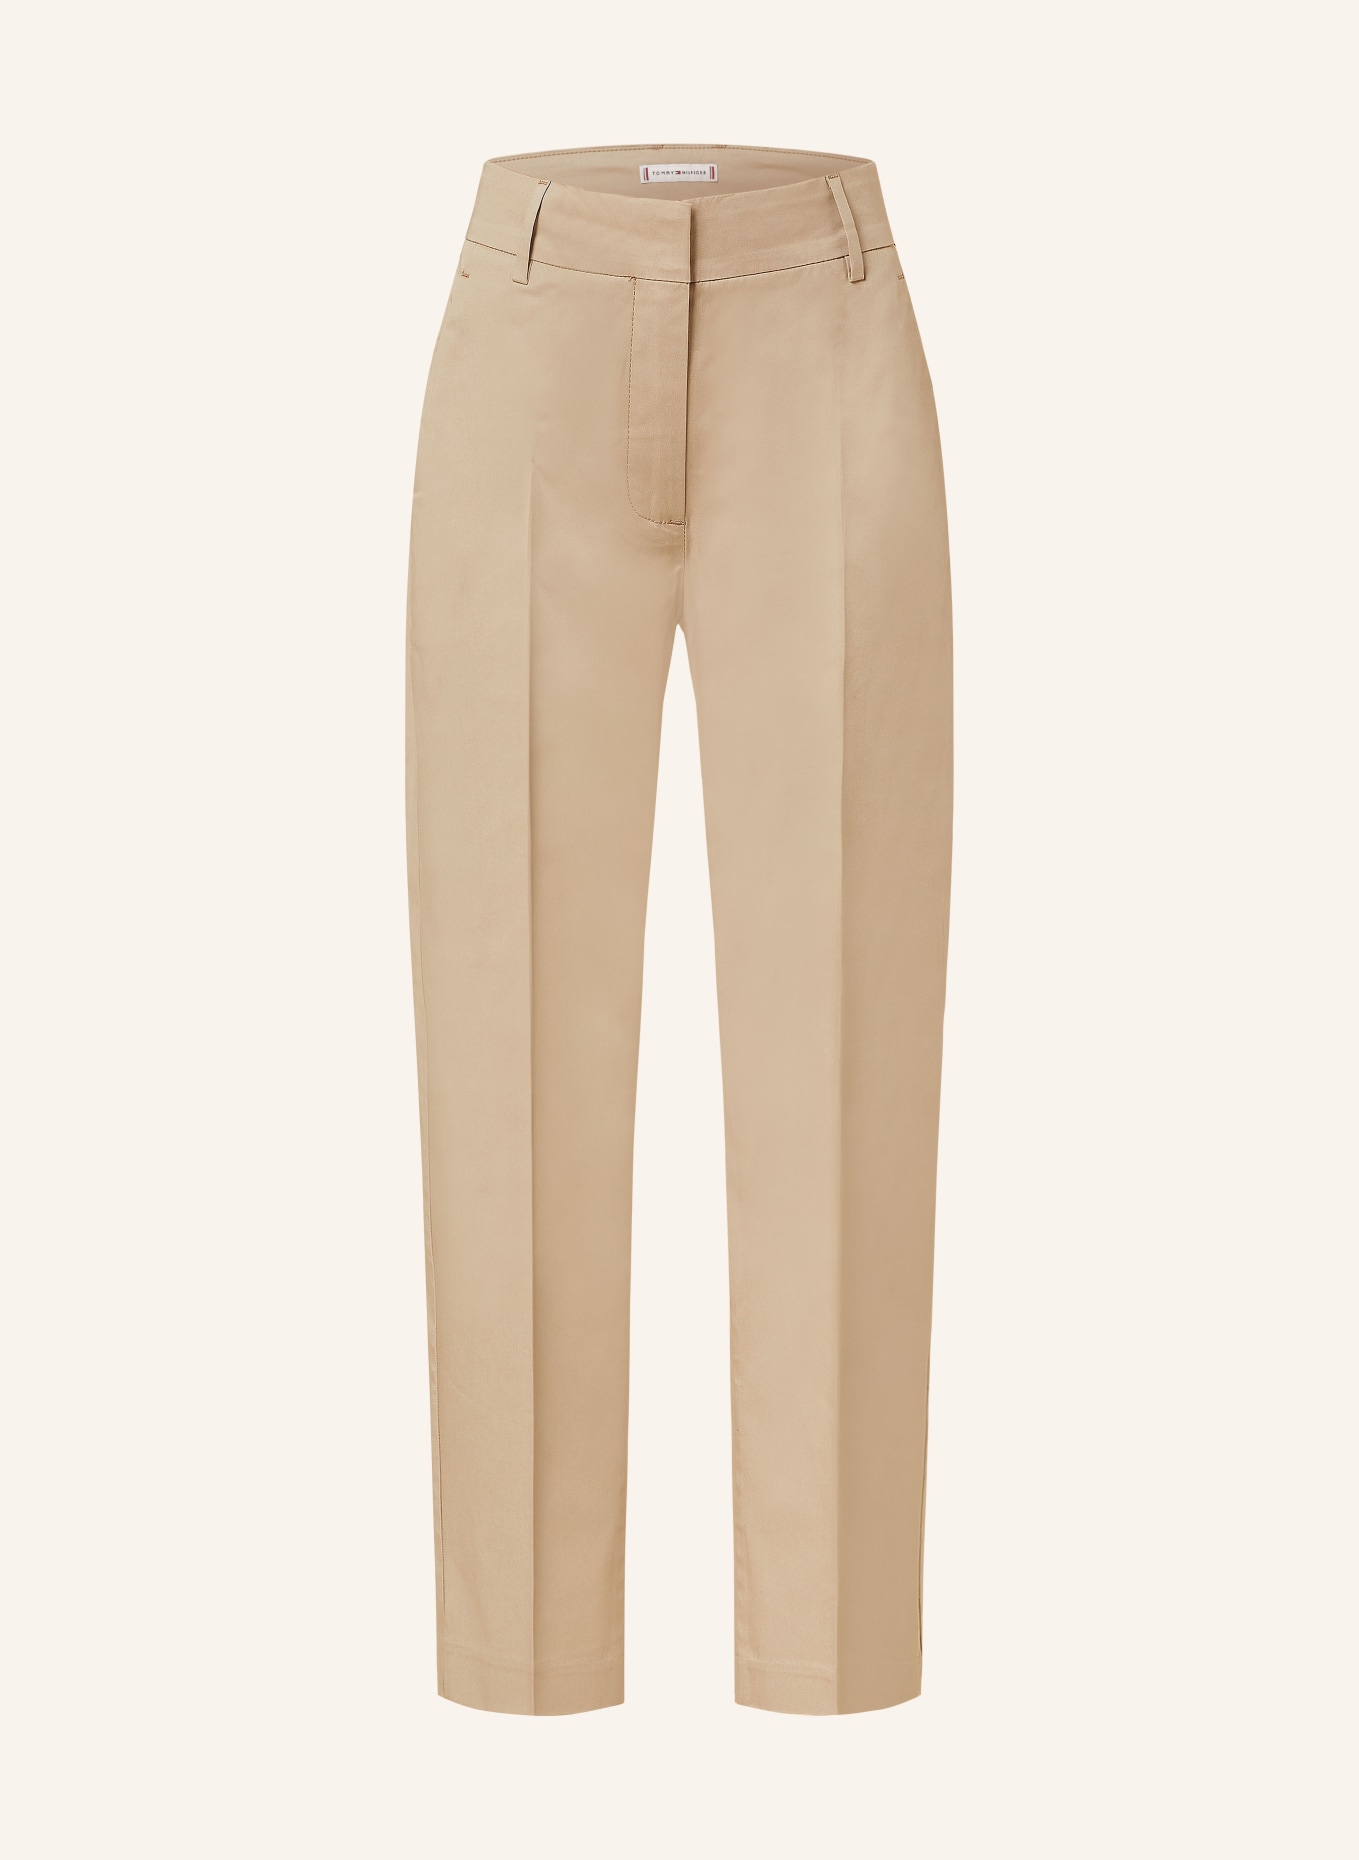 TOMMY HILFIGER 7/8 pants, Color: BEIGE (Image 1)